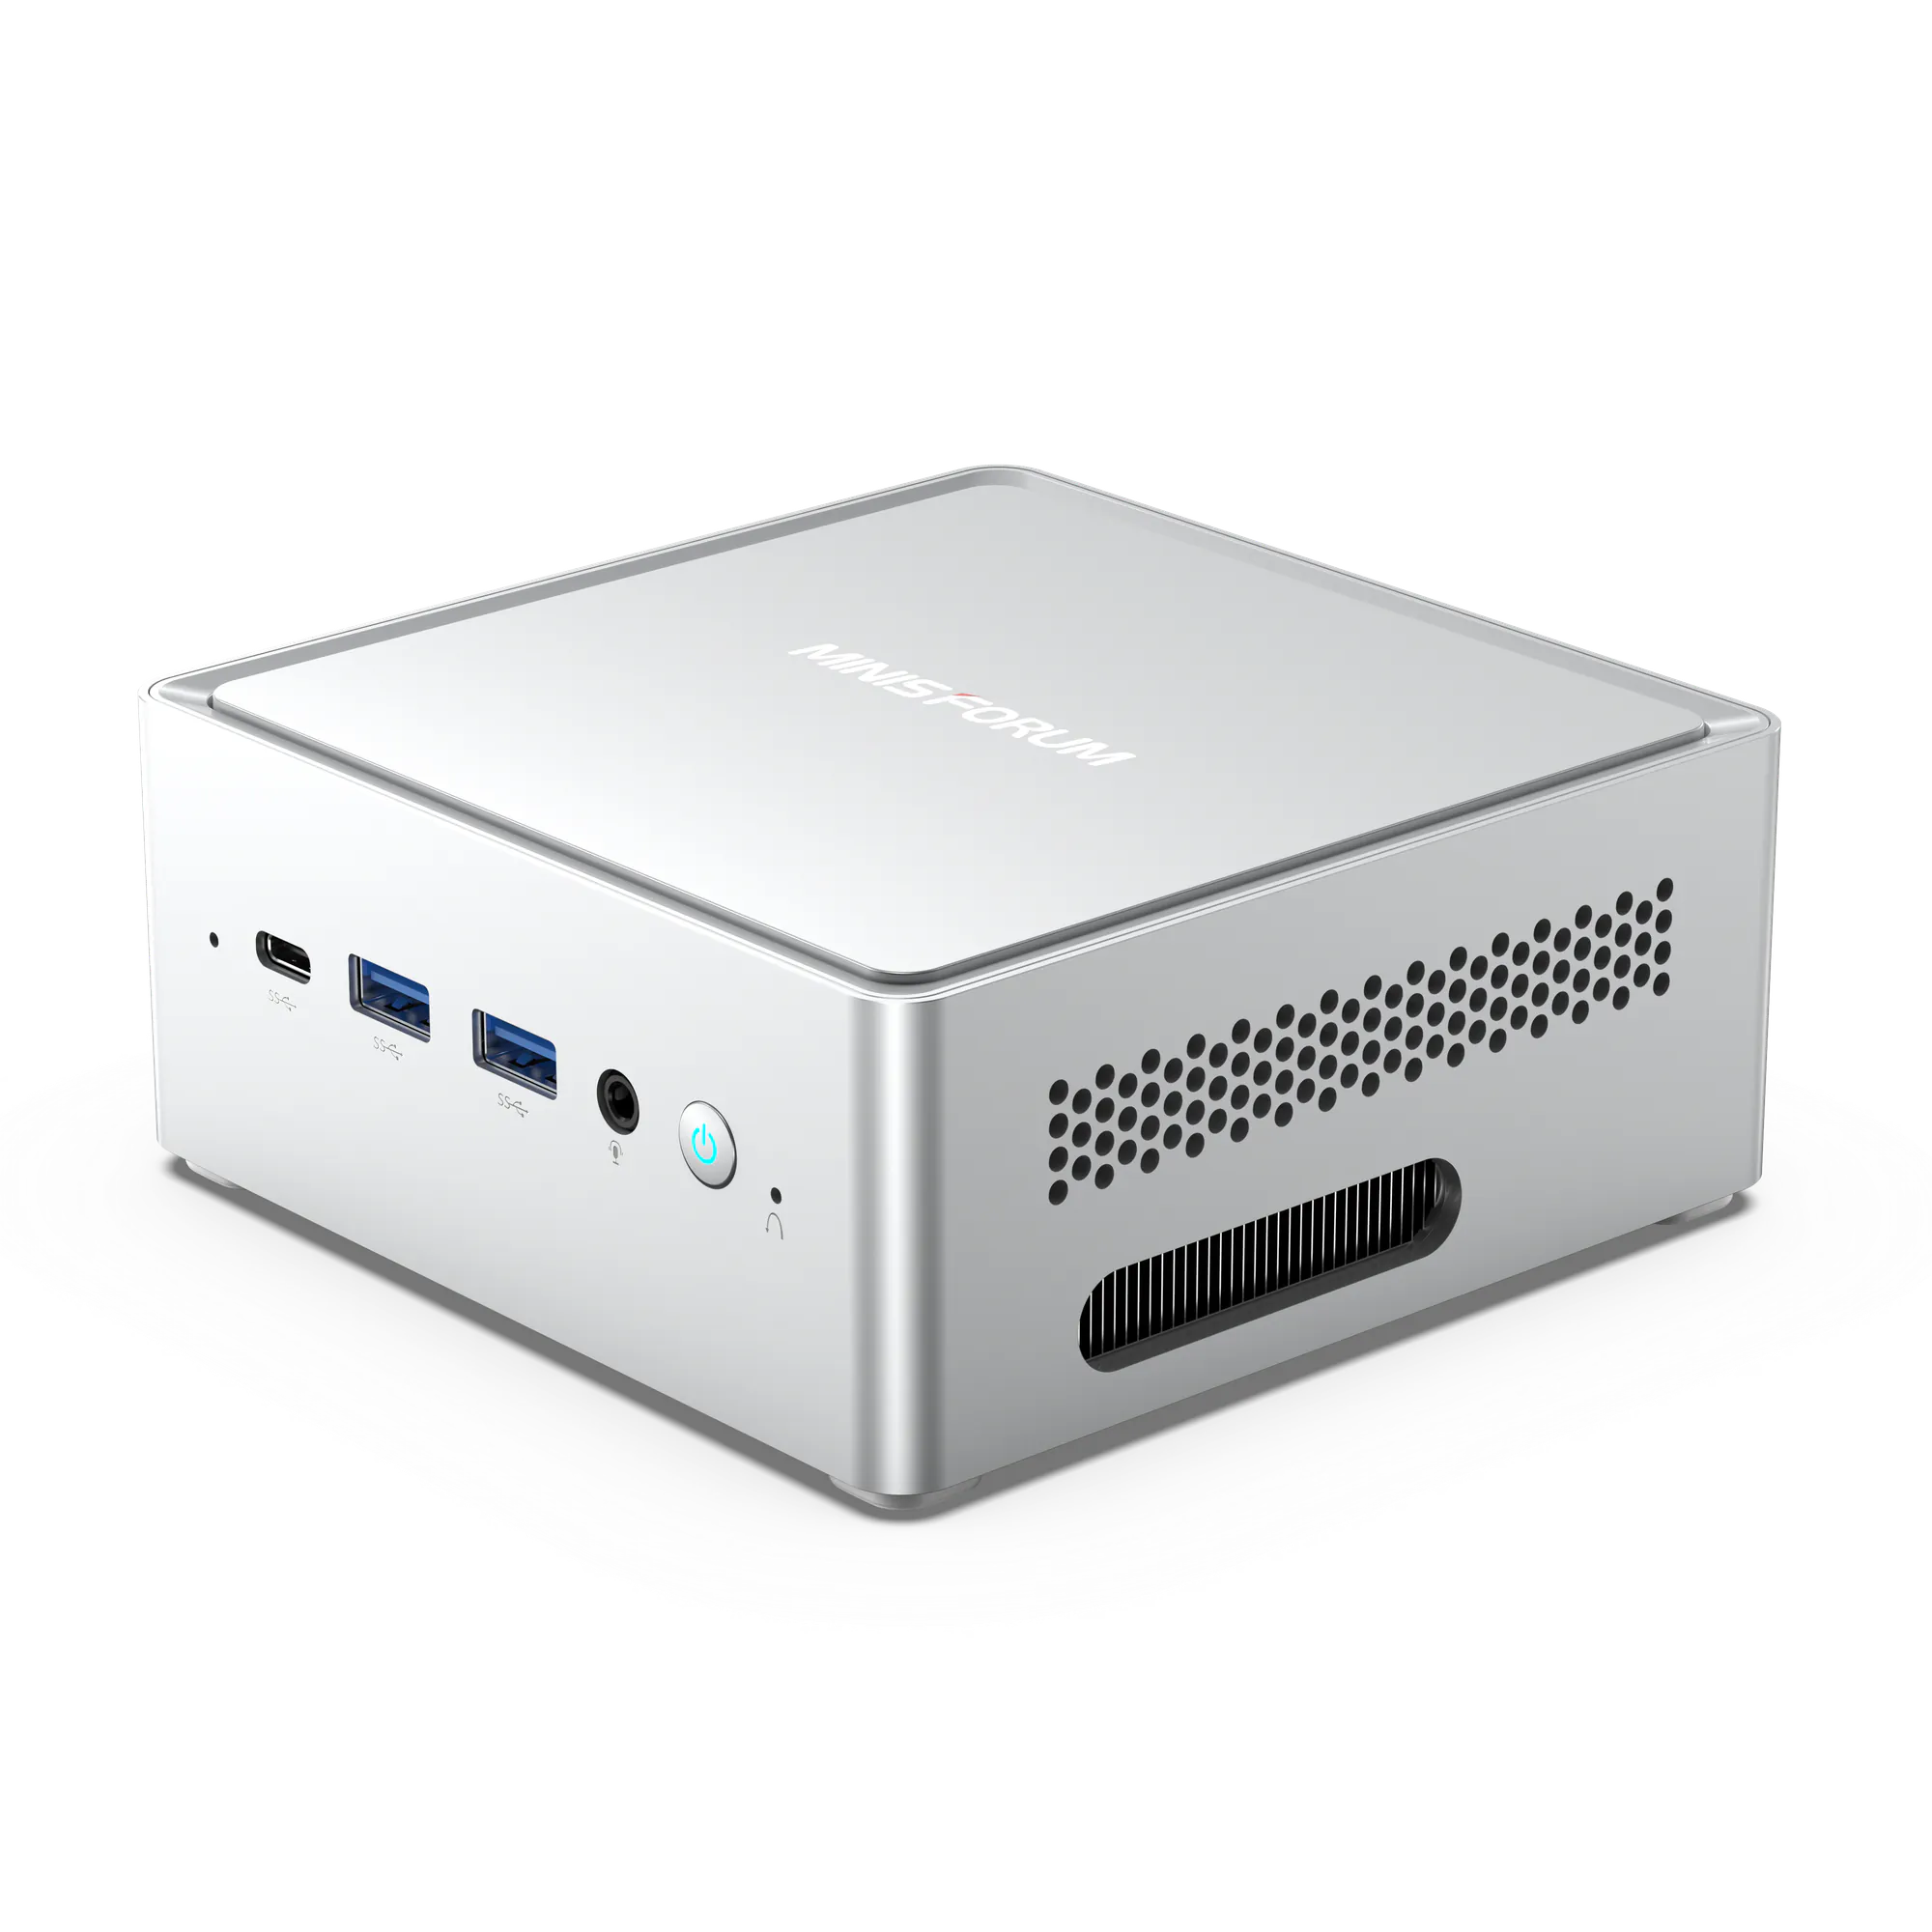 Minisforum NAB9 Mini PC 迷你電腦 (i9-12900HK、16GB DDR4 RAM、512GB SSD、Windows 11 Home) 免費升級至3 年保養